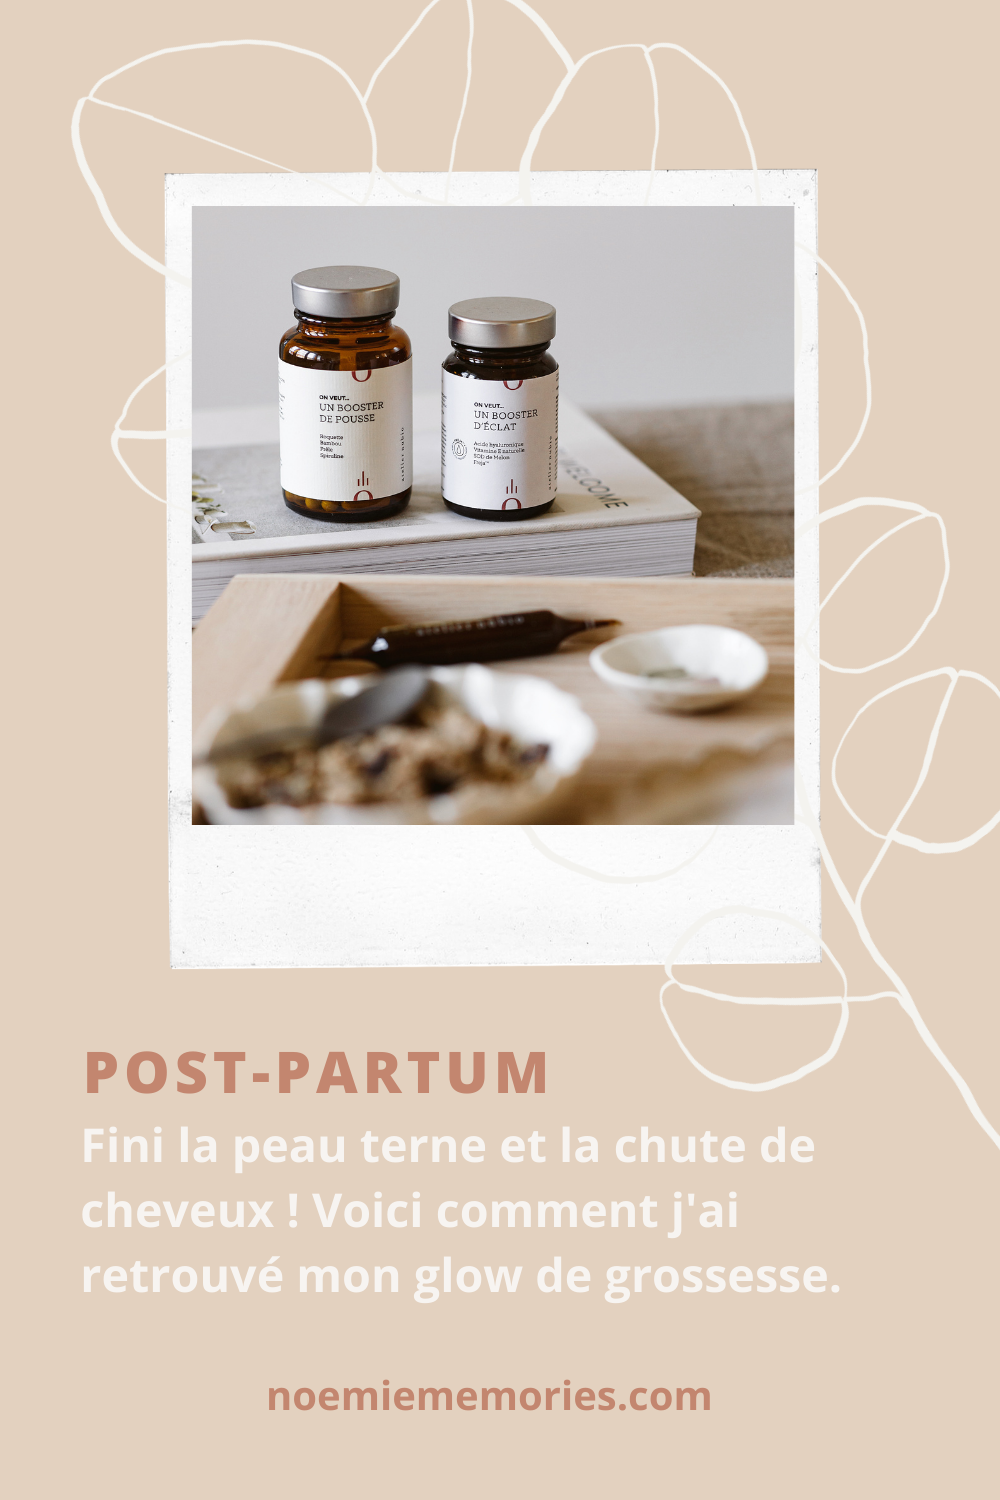 postpartum-complements-alimentaires-atelier-nubio-pinterest-noemiememories-studio-1.png